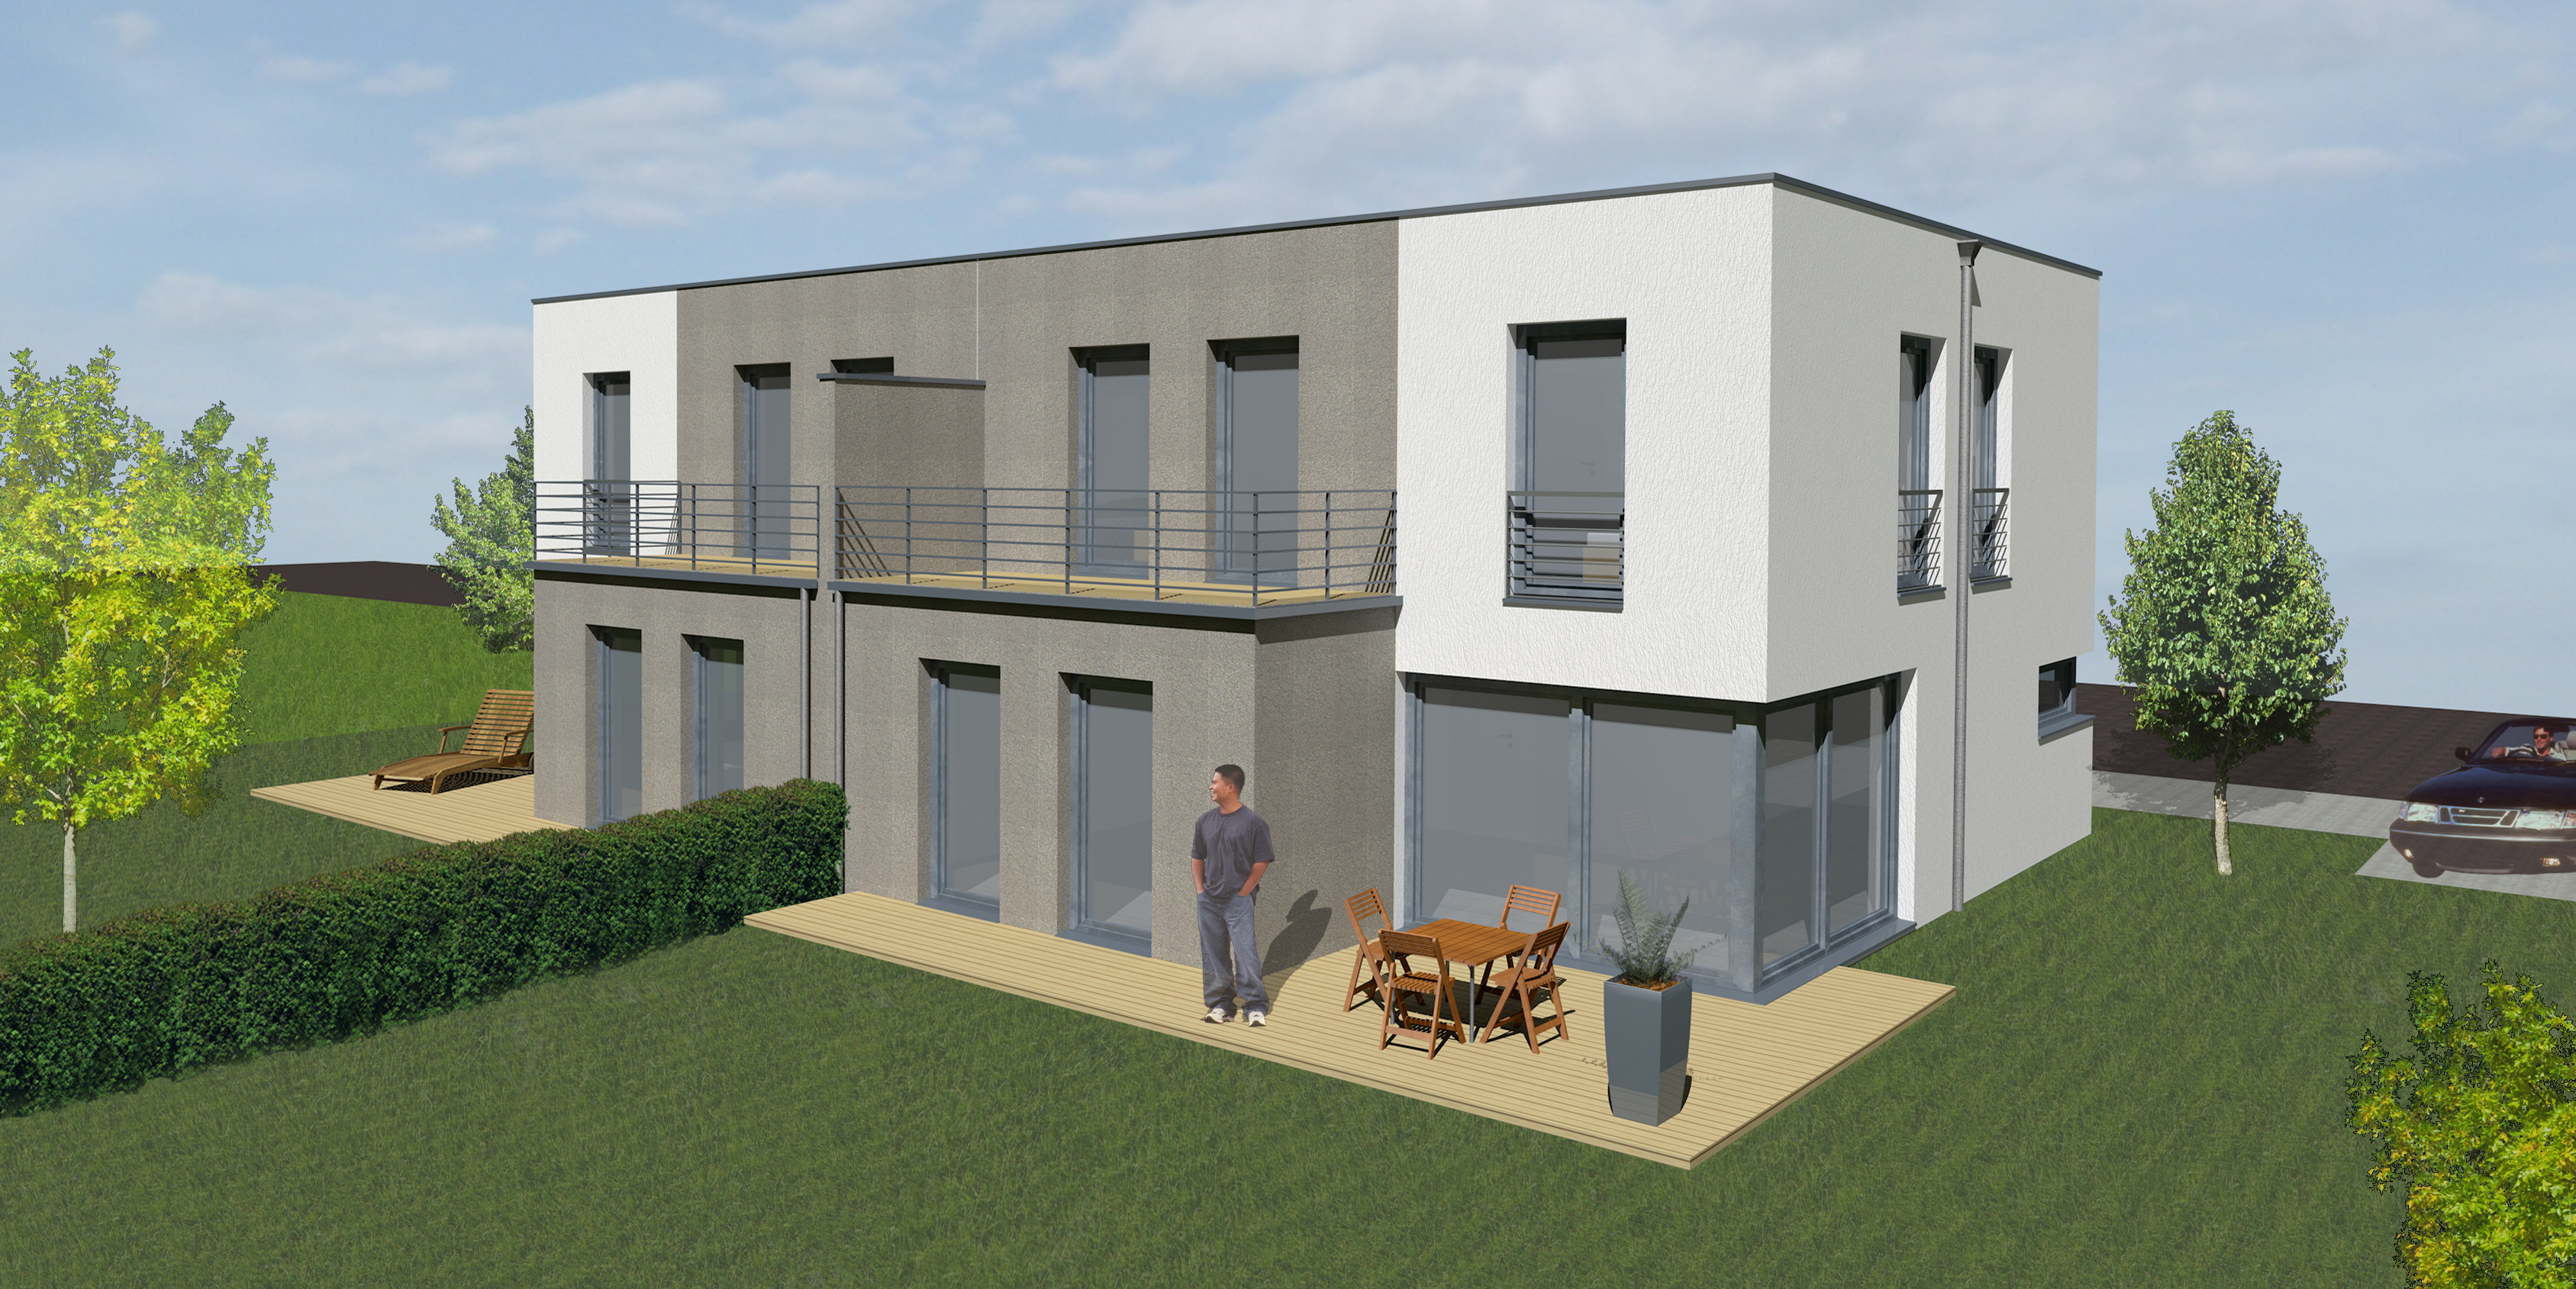 Neubau einer Doppelhausanlage in Bad Kreuznach Bild 1